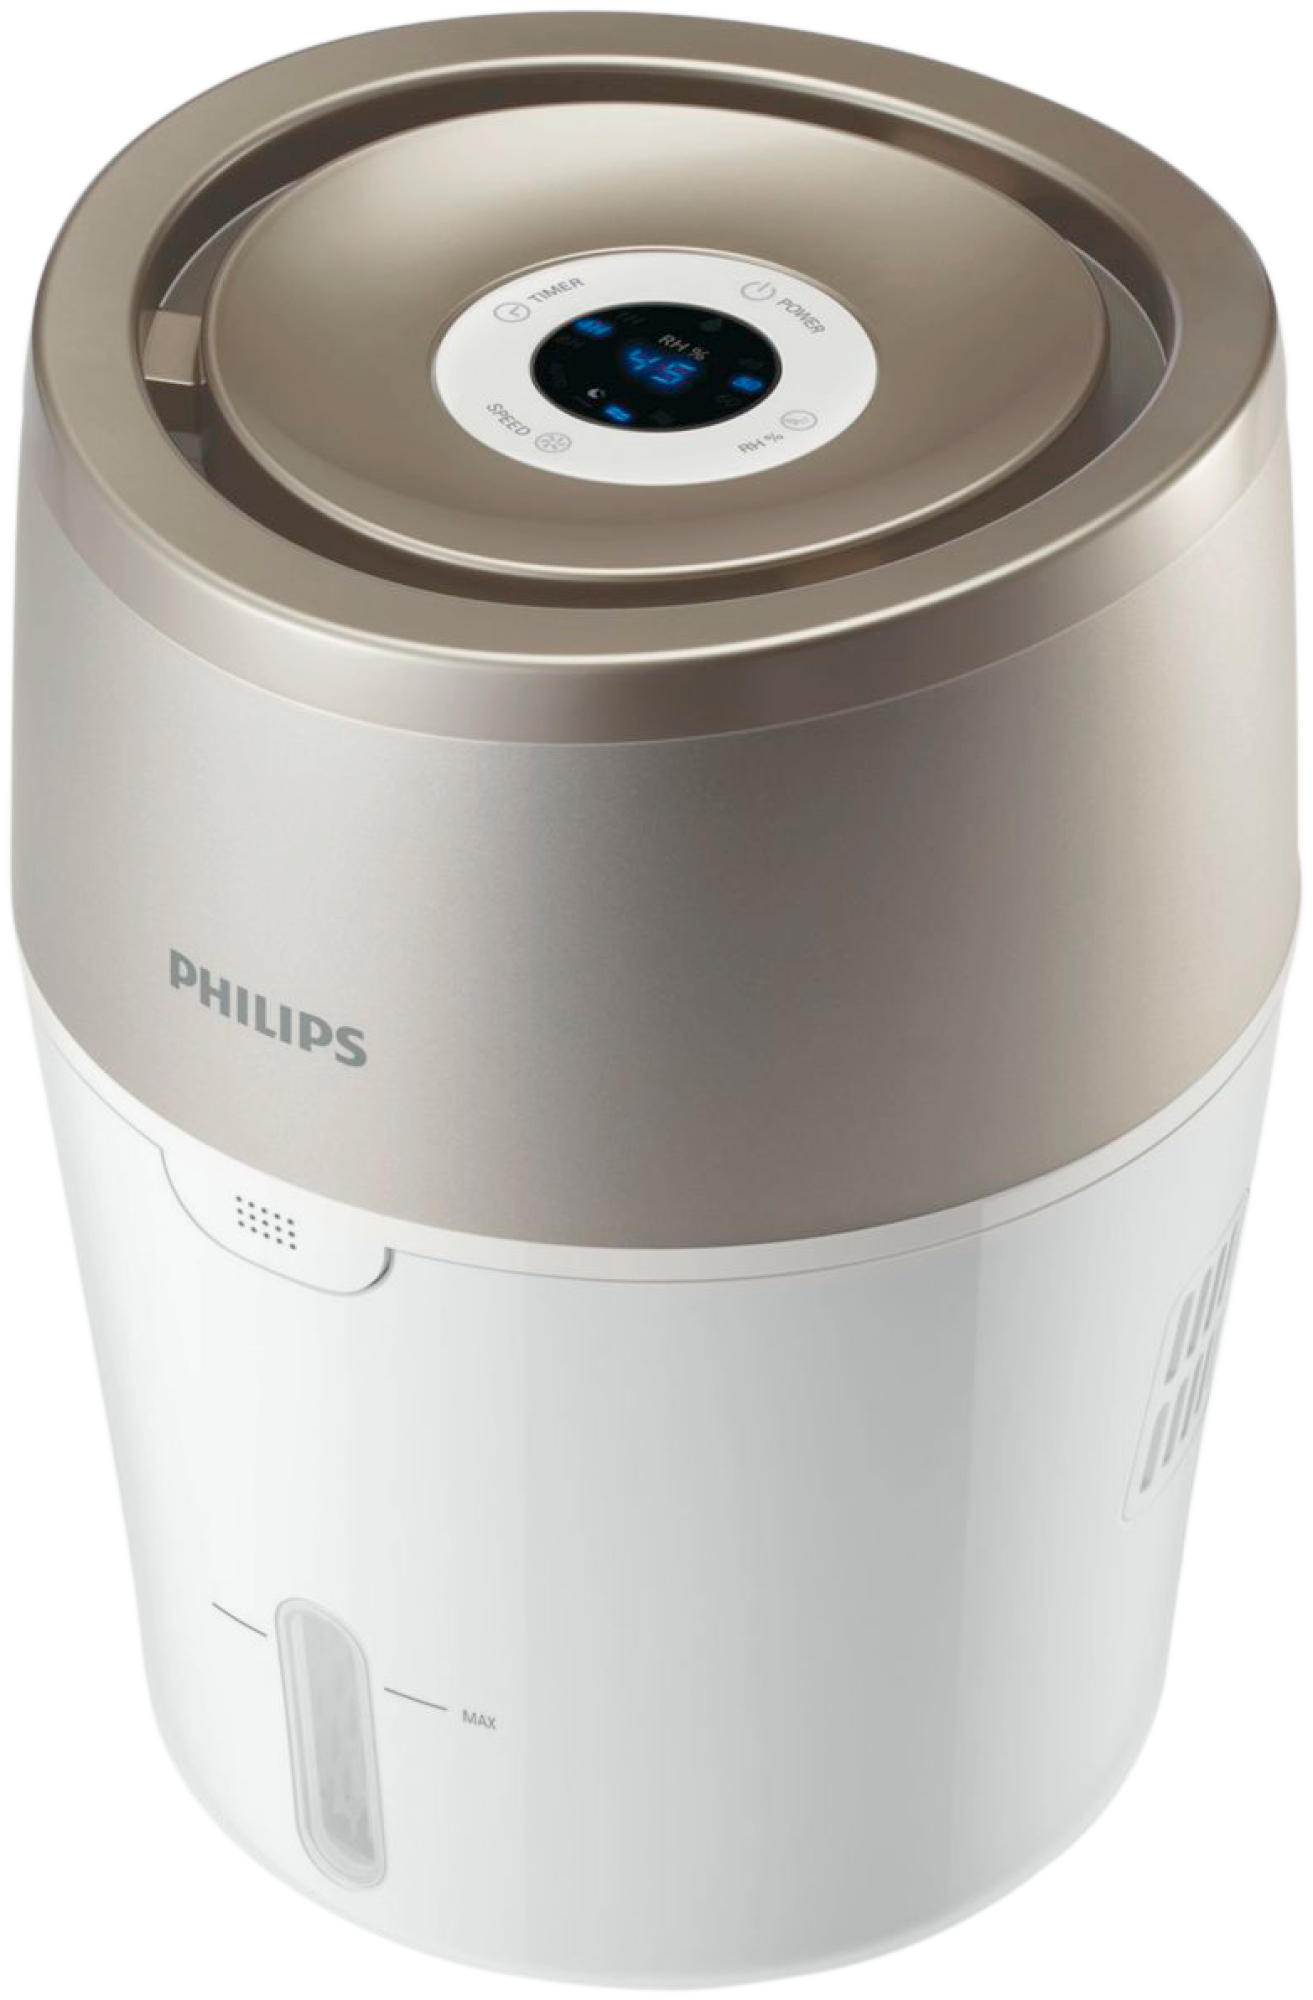 Humidificador Philips Hu480301 220 mlh capacidad 2l tecnología nanocloud seguro y